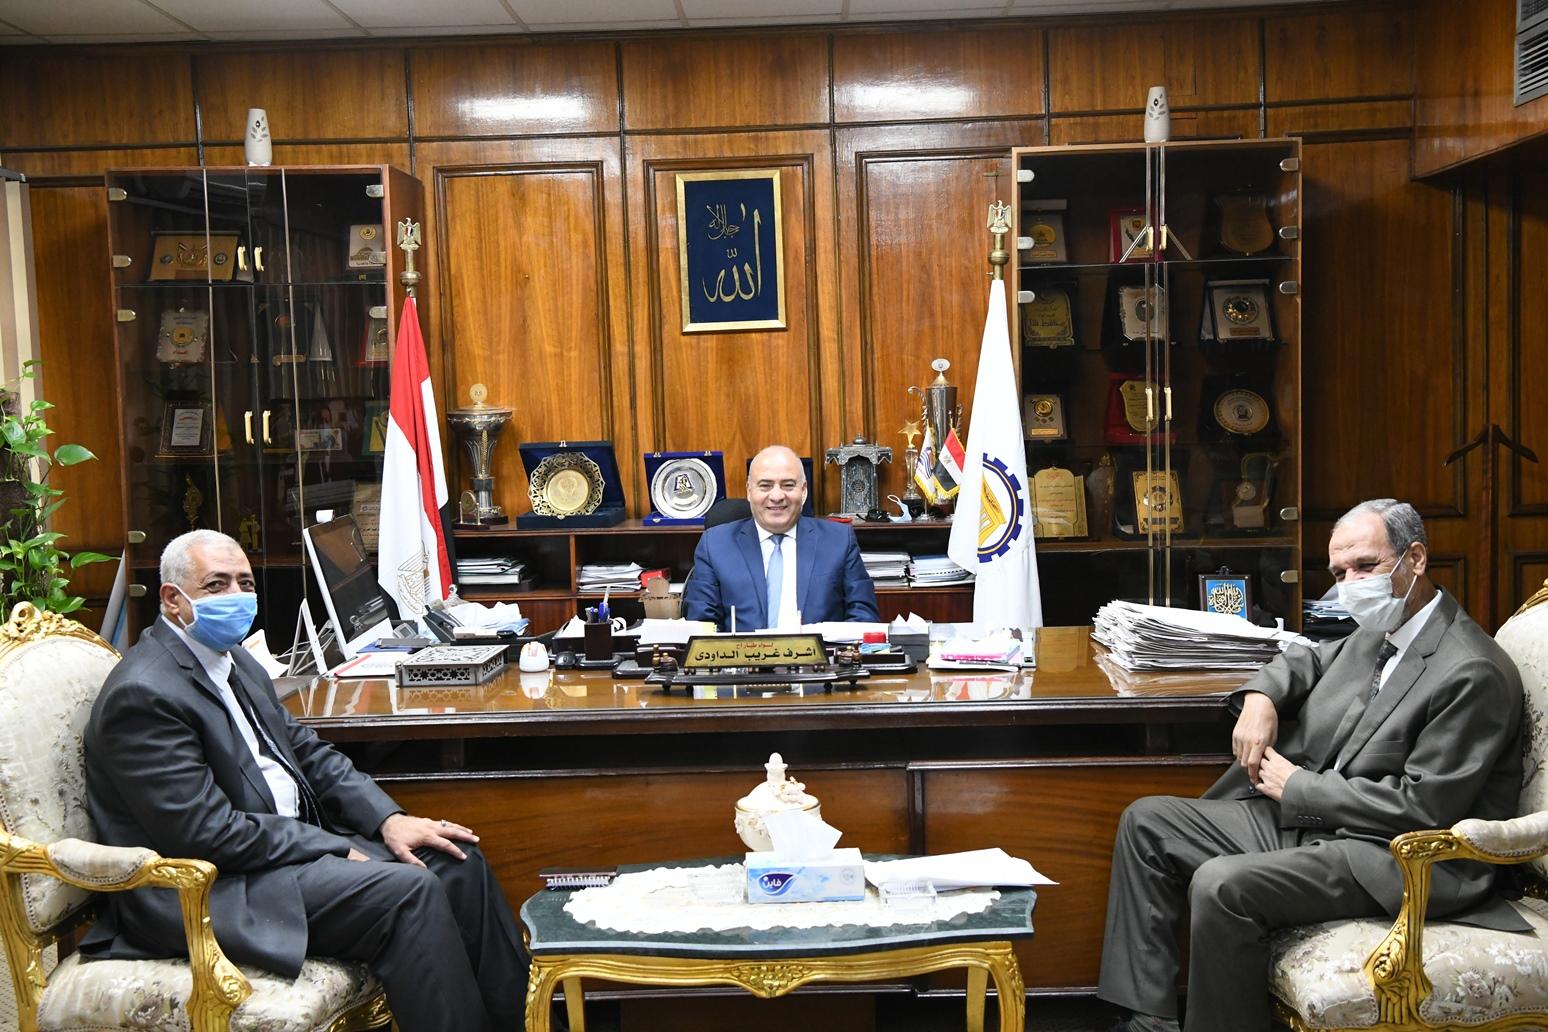   «الداودى» يستقبل رئيس مجلس ادارة مصنع سكر نجع حمادي